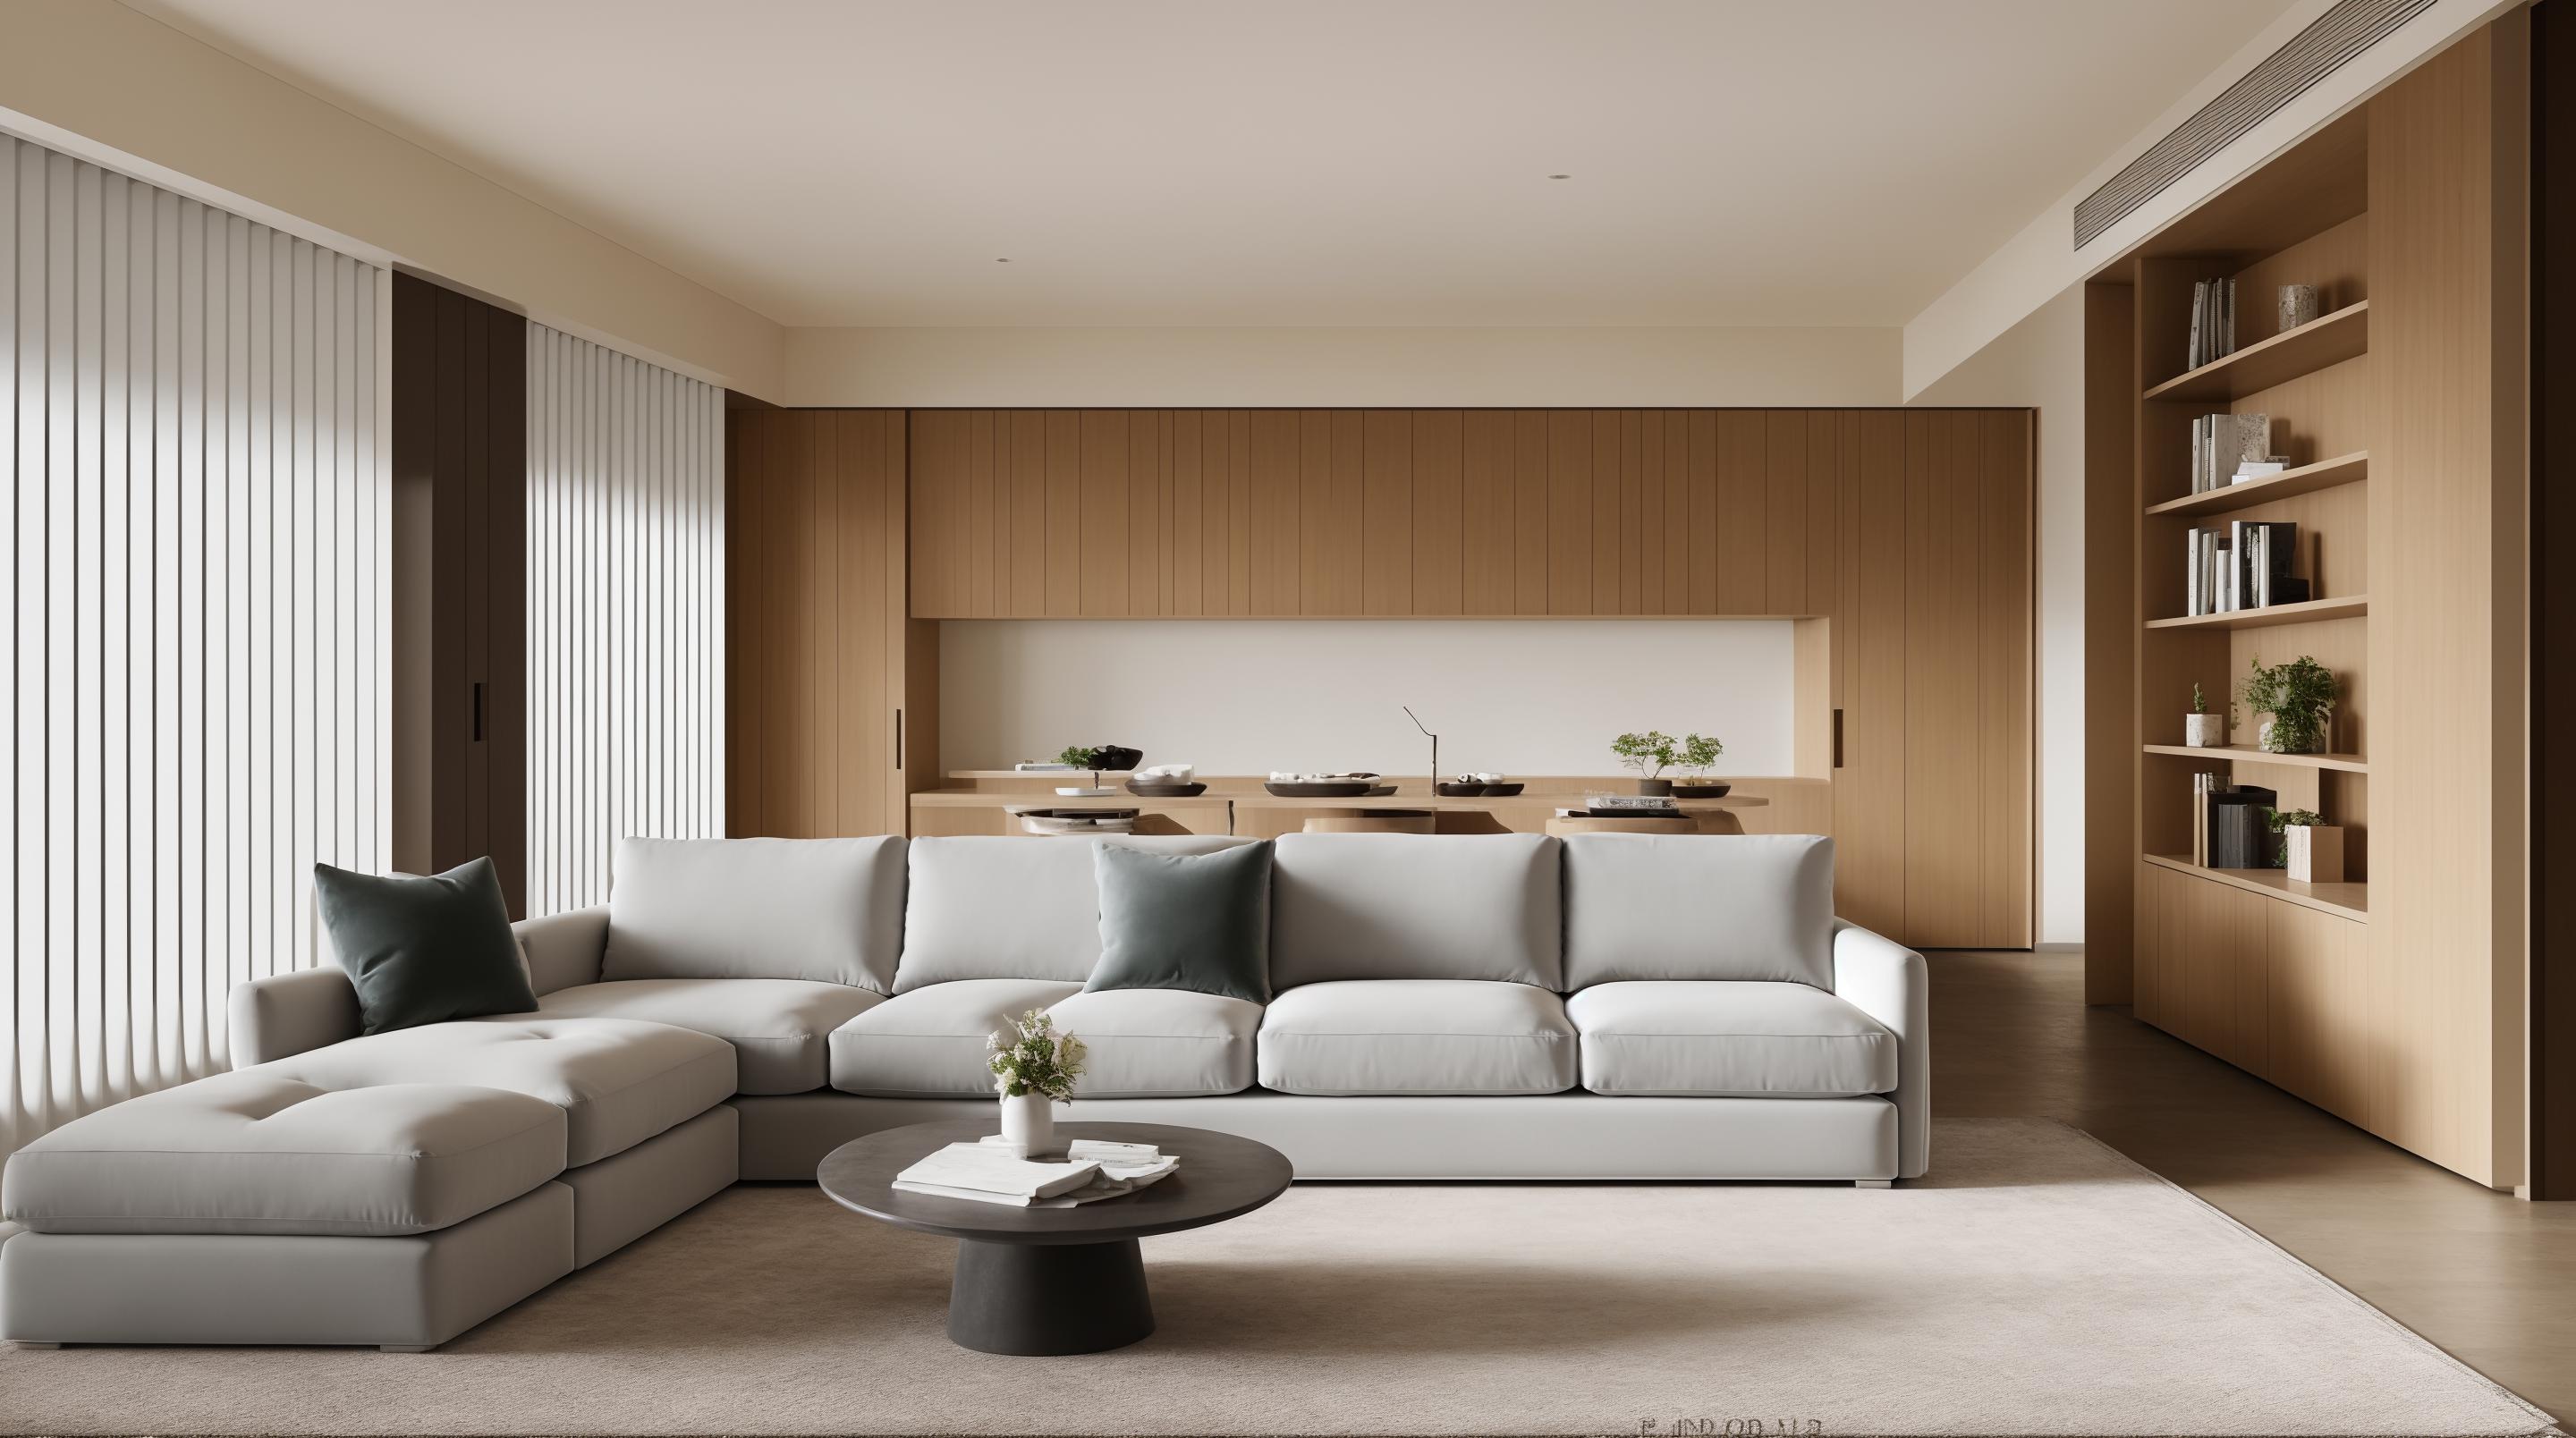 室内设计-现代风格-interior design-Modern Style image by baimingdan